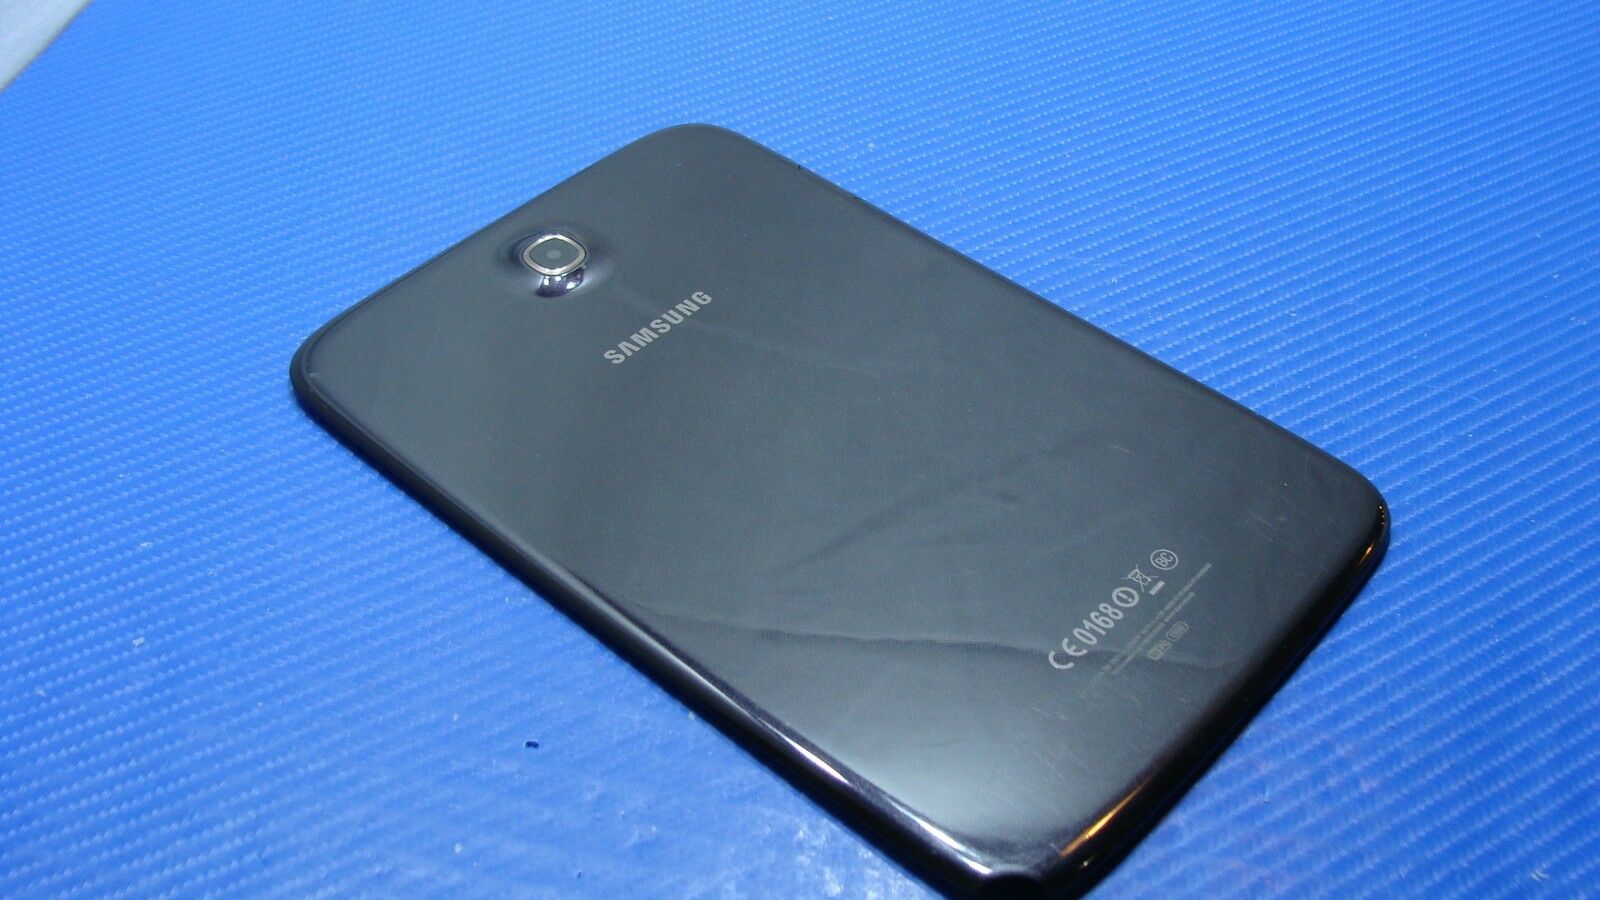 Samsung Galaxy Note GT-N5110 8